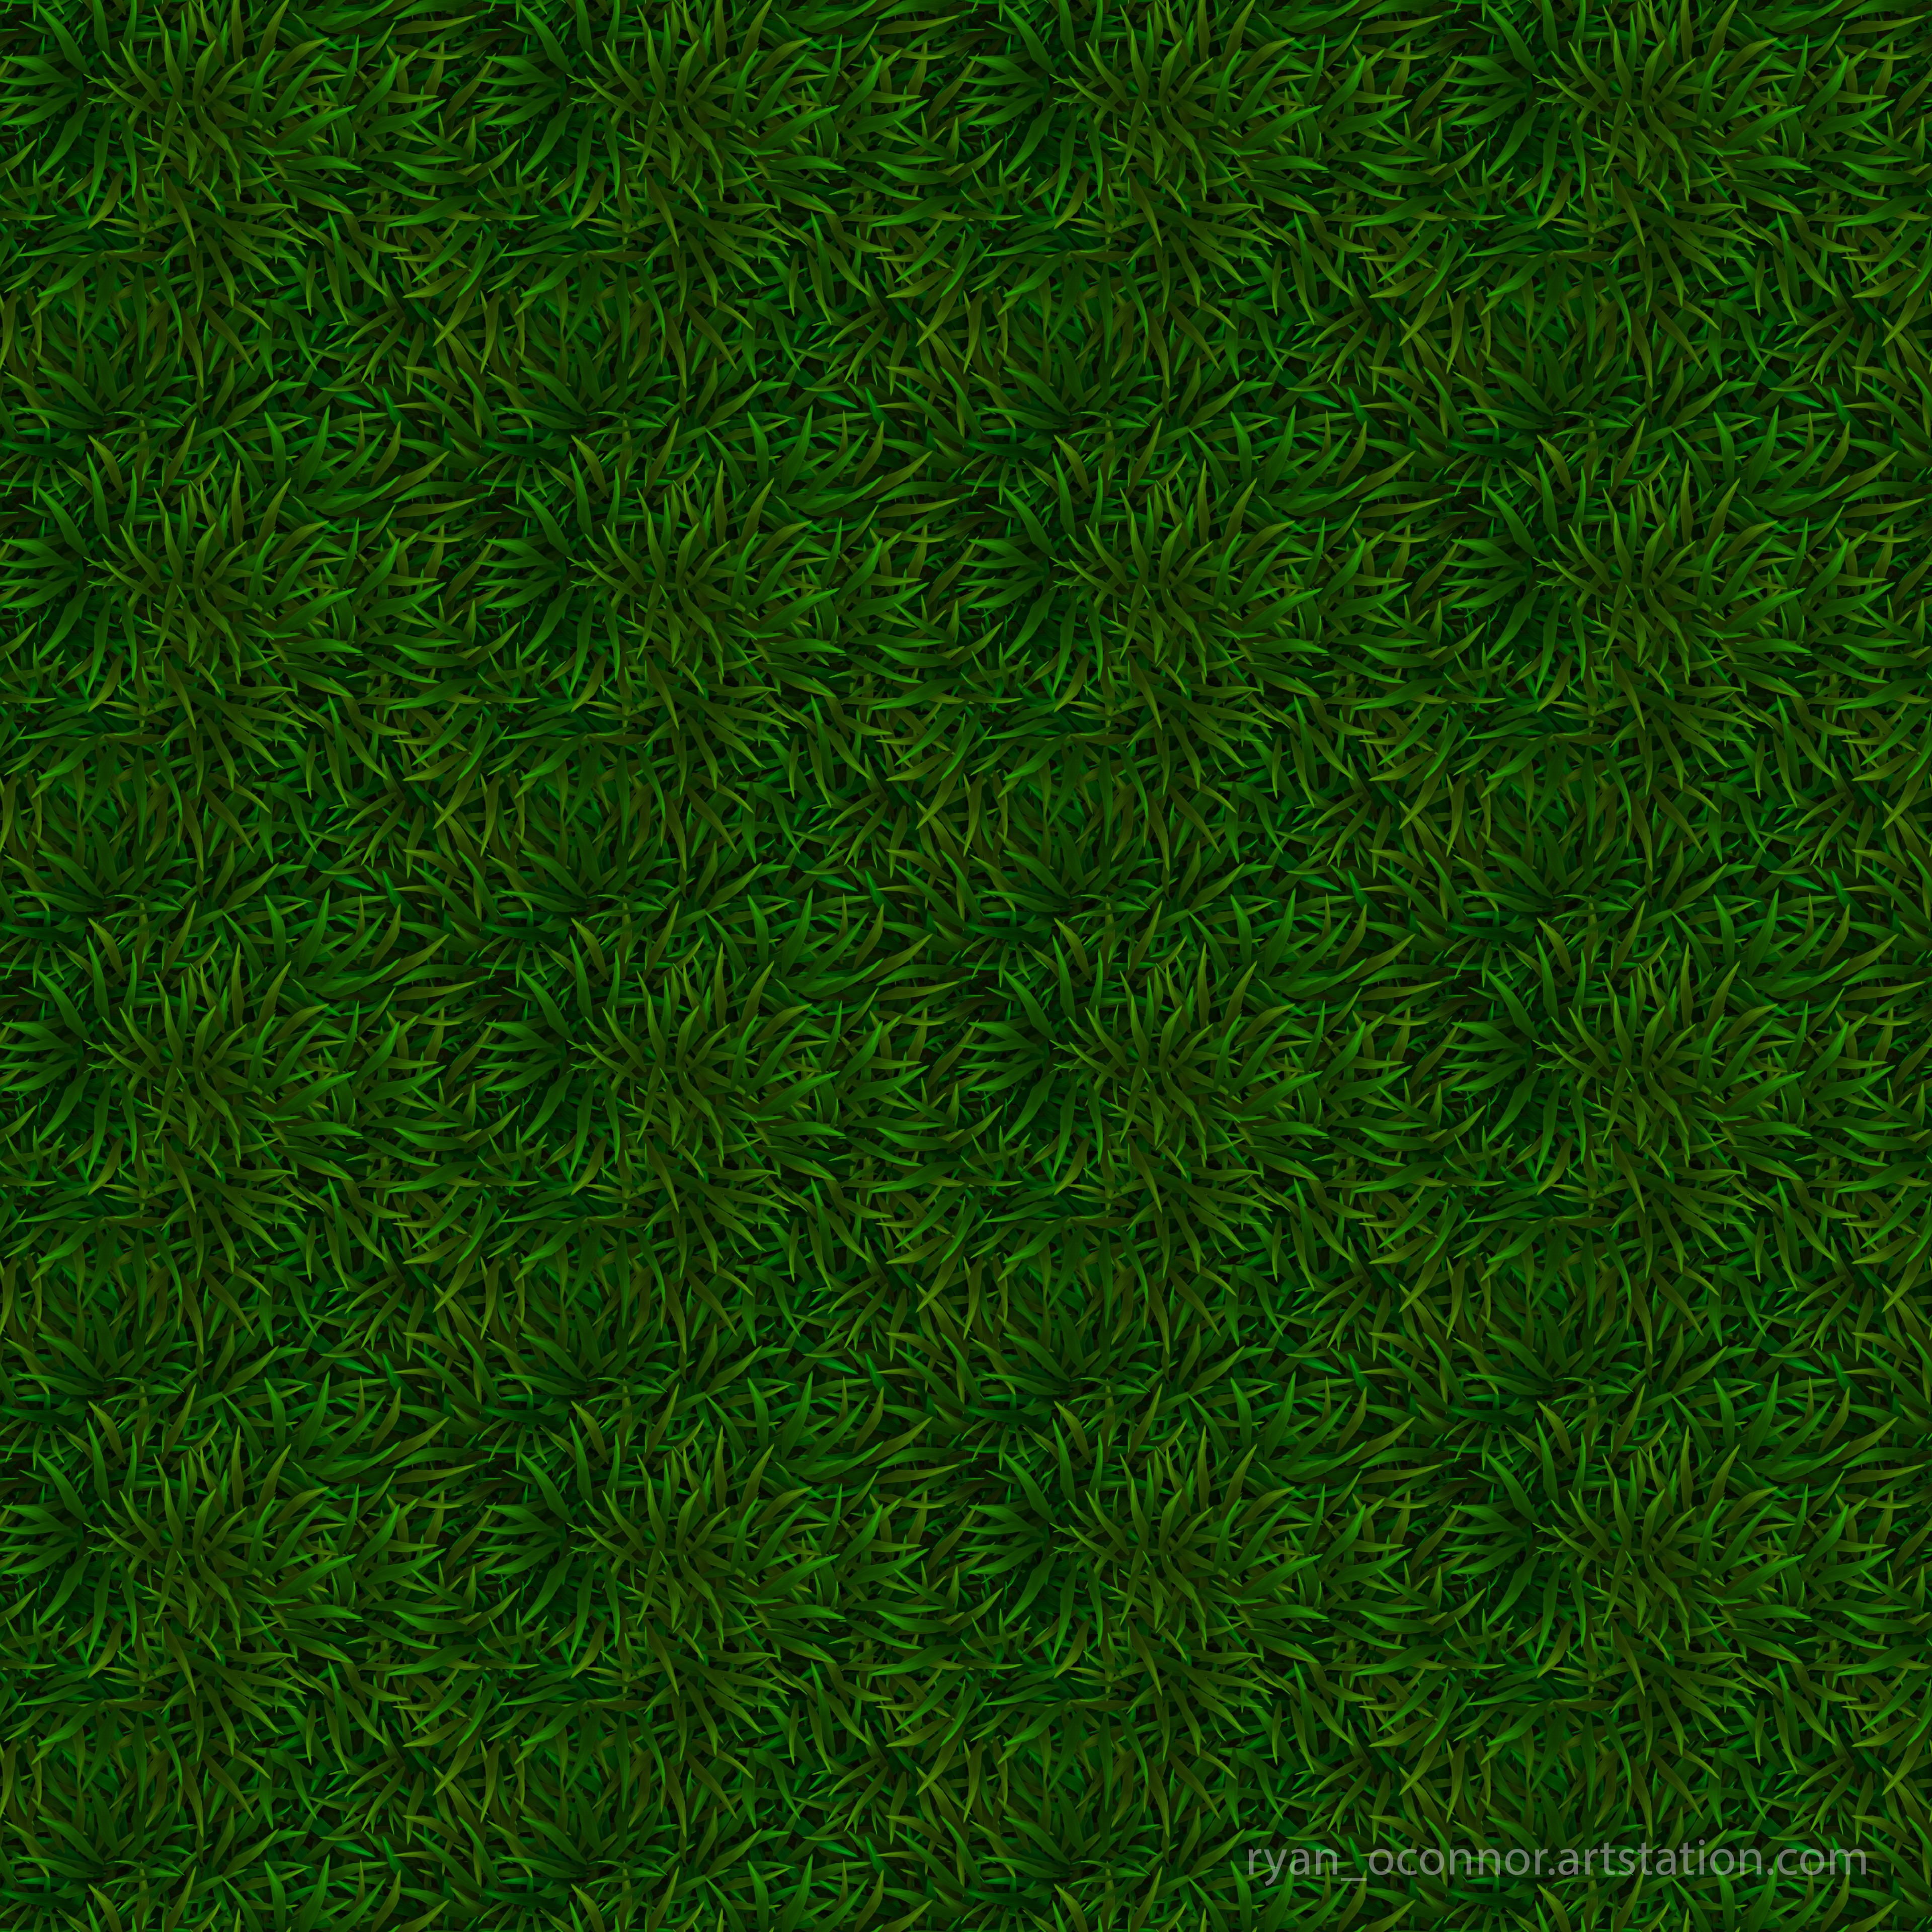 Tiled Seamless Grass